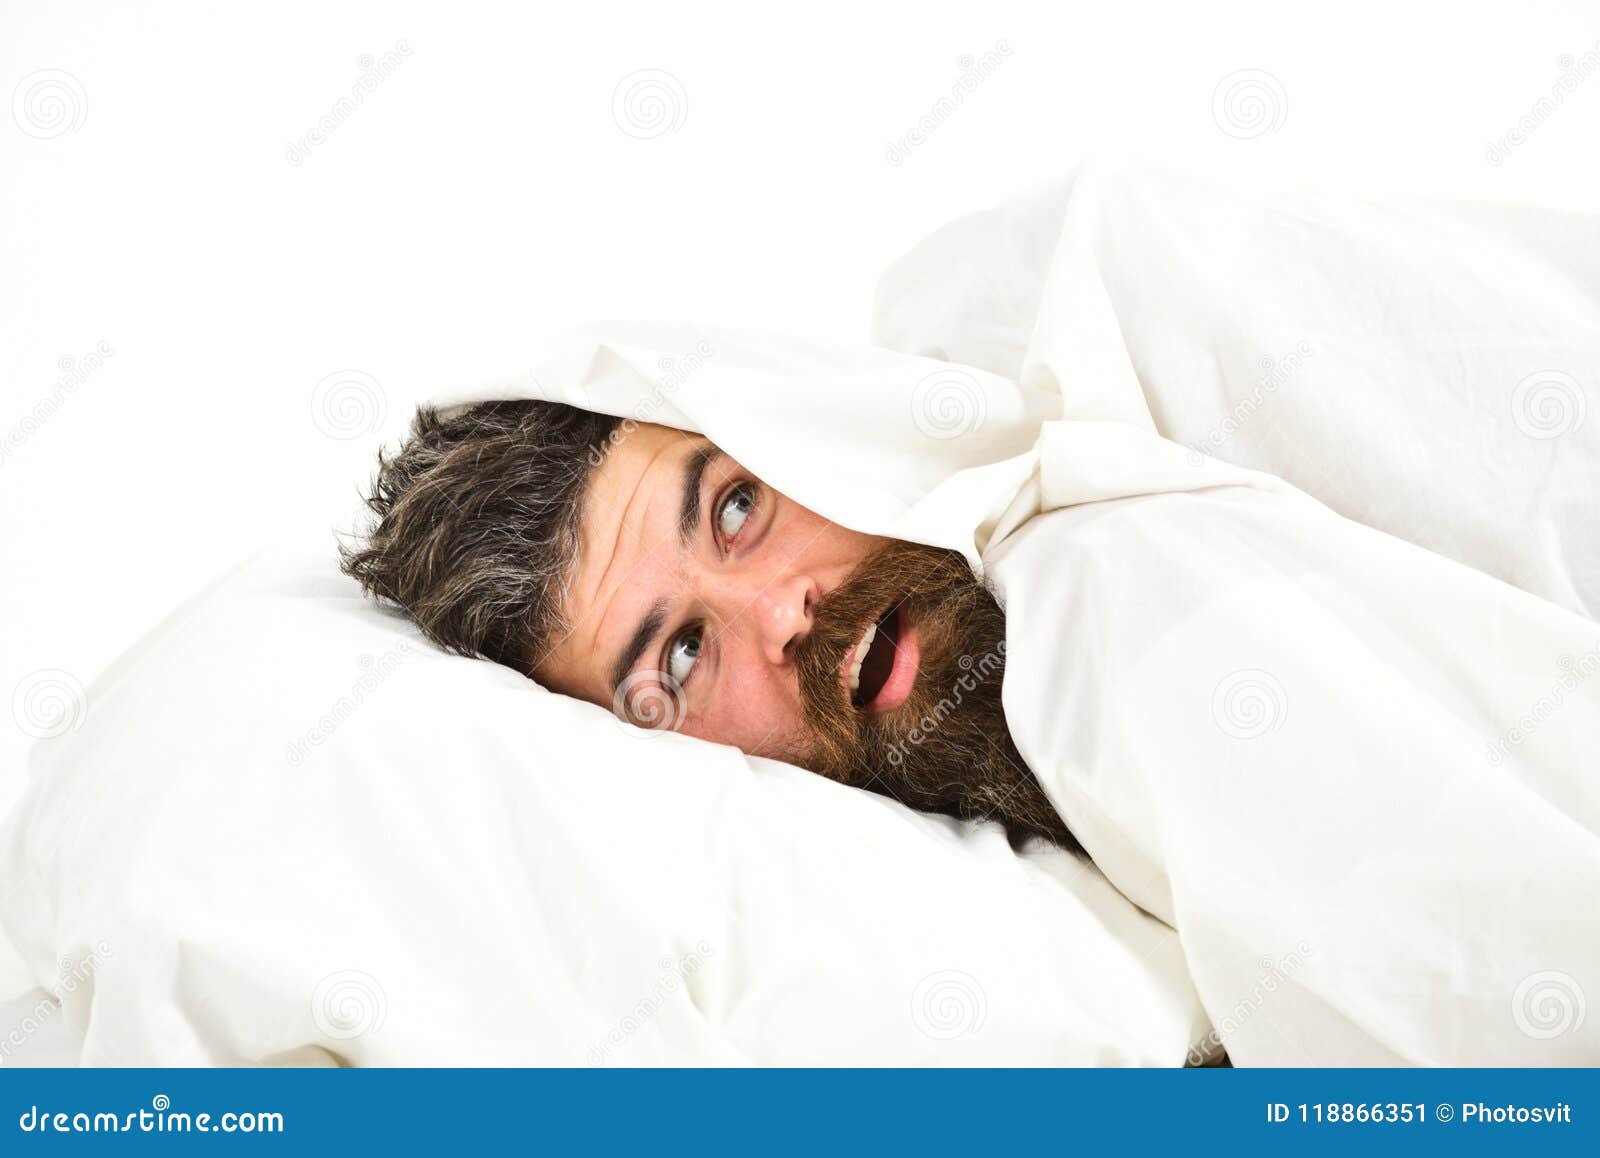 man-beard-mustache-hiding-bed-under-blanke-blanket-home-guy-surprised-face-lay-white-118866351.jpg